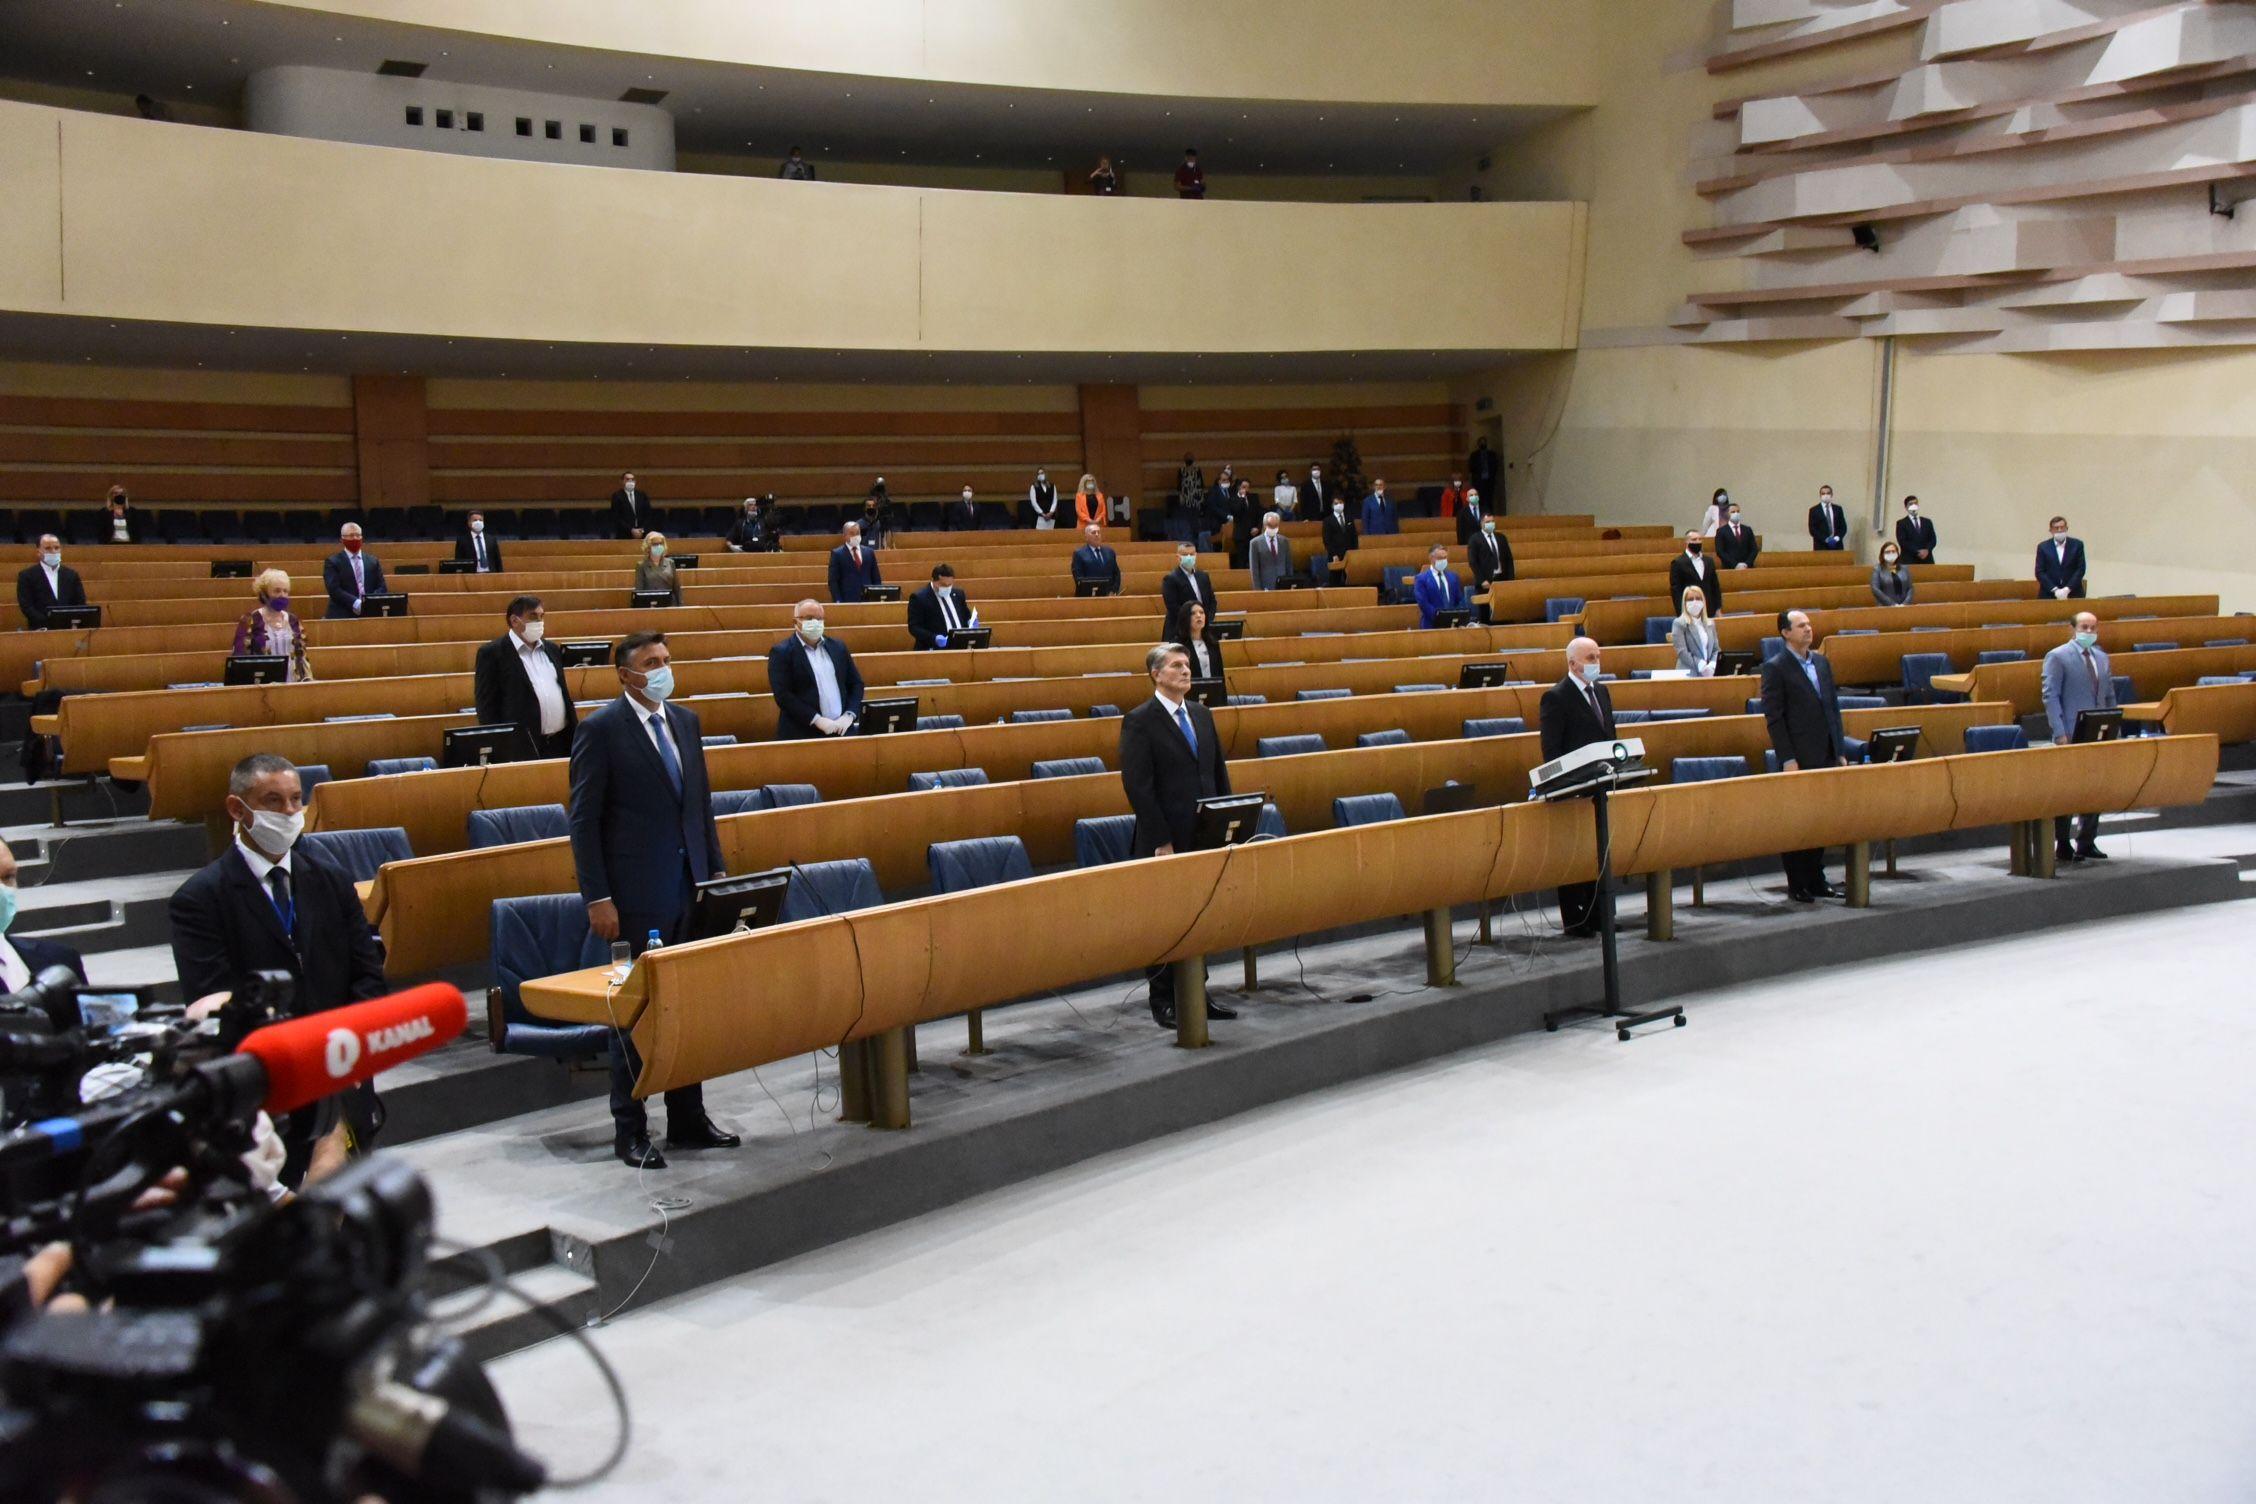 Brojna delegatska pitanja: Zastupnici negoduju jer ministri ne prisustvuju sjednici